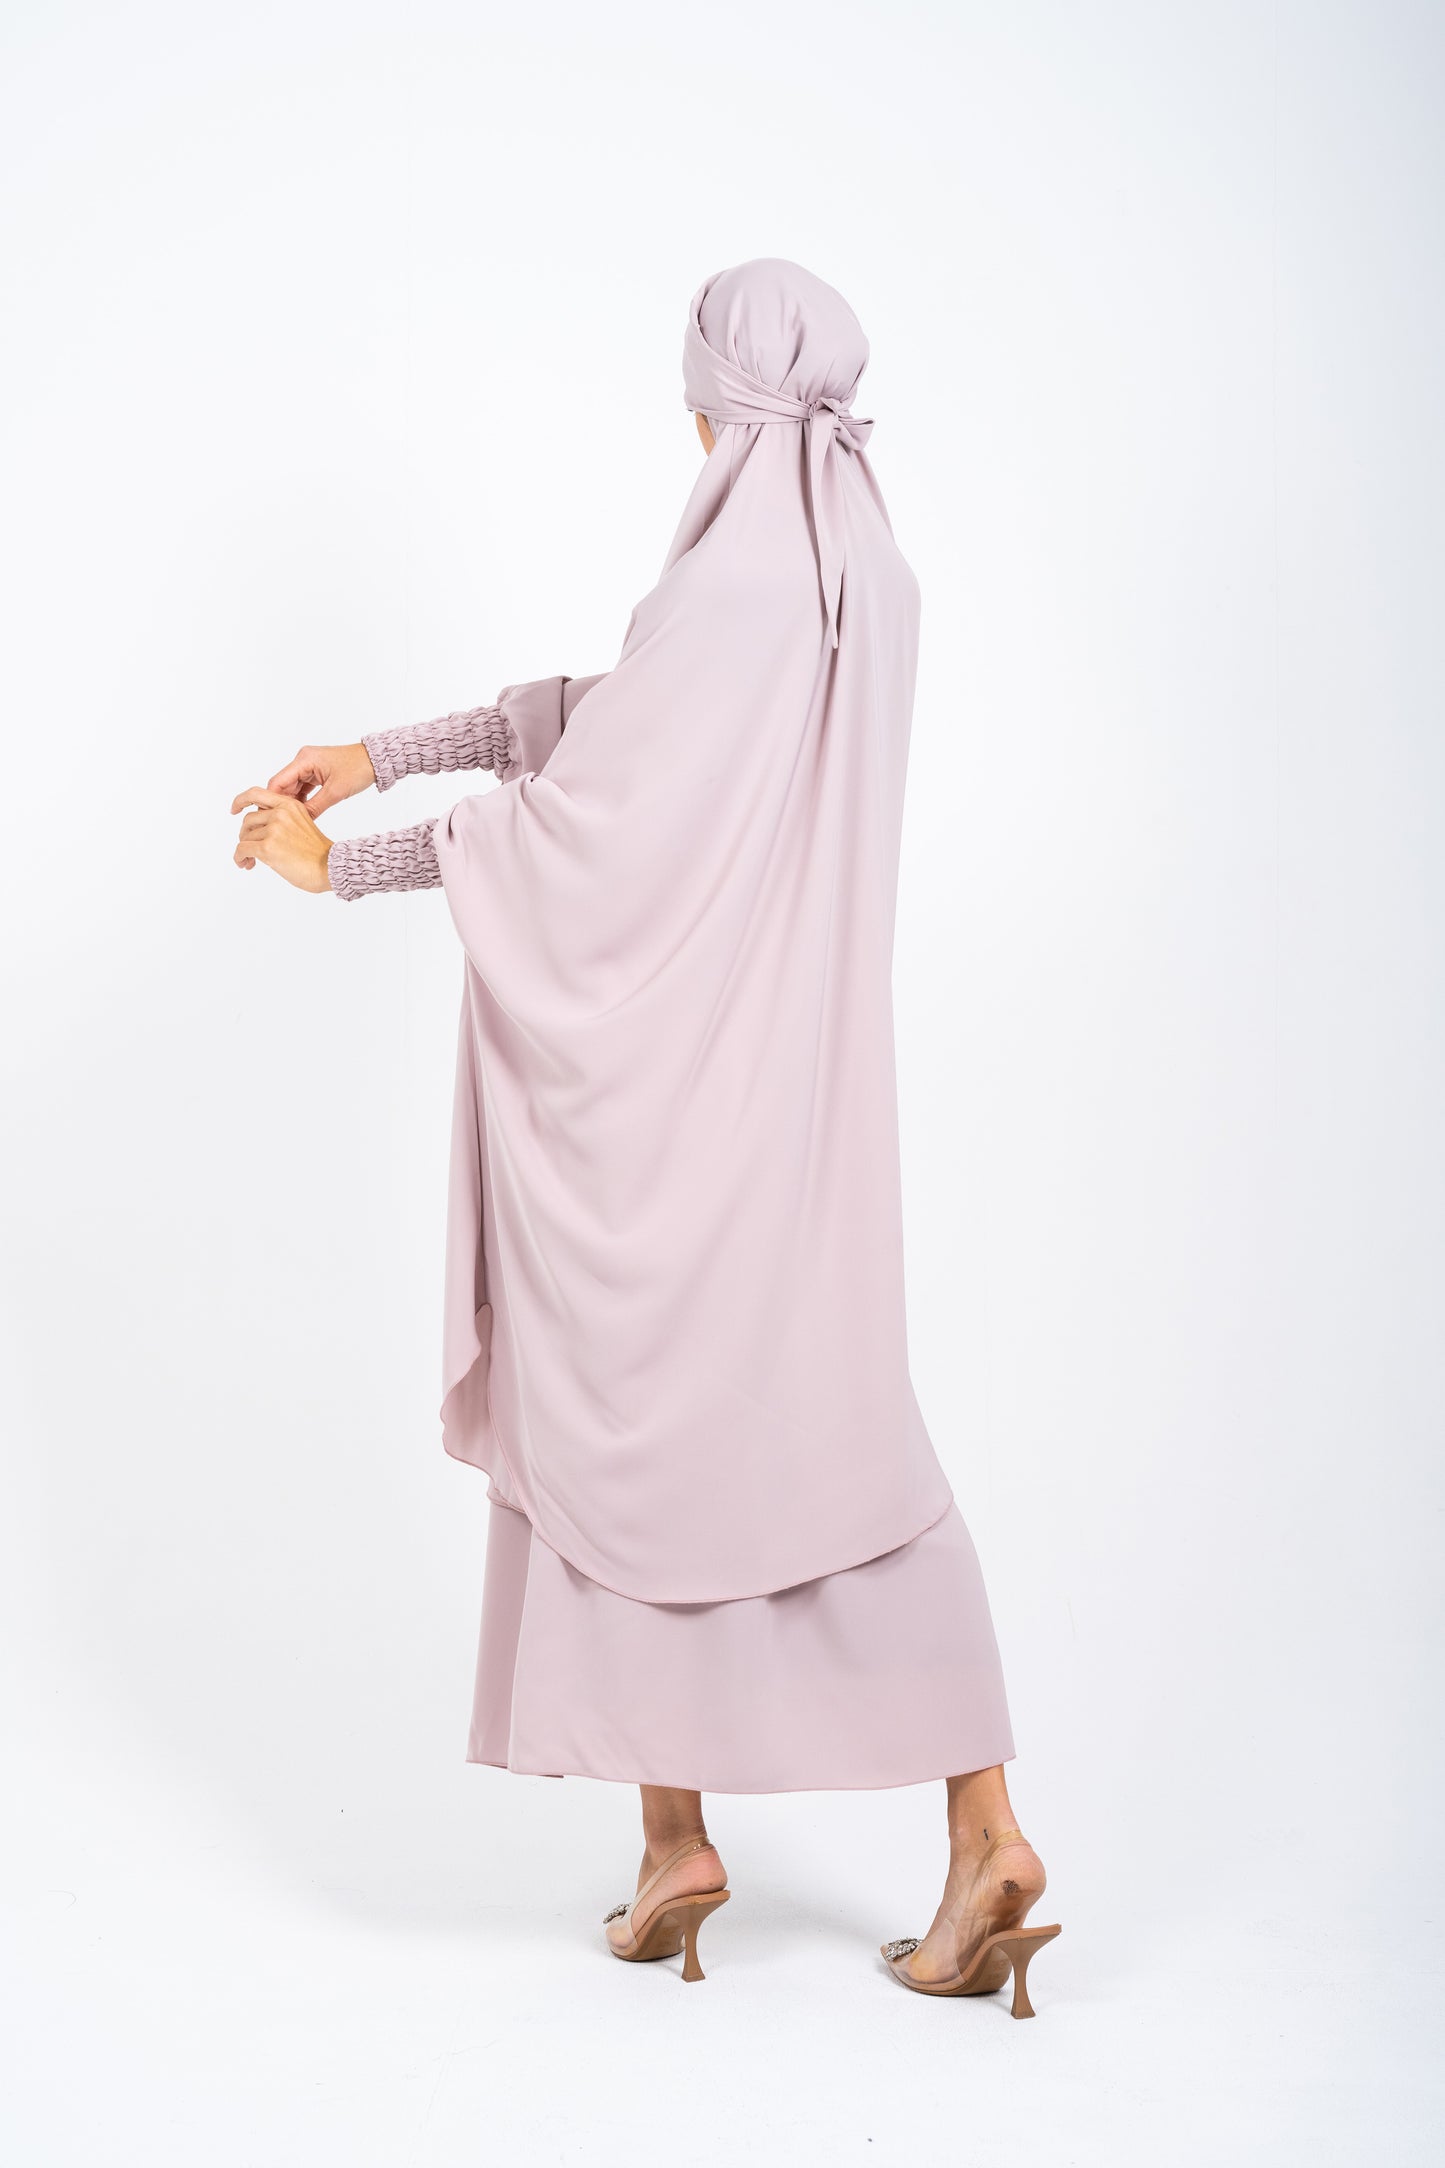 Jilbab with Skirt